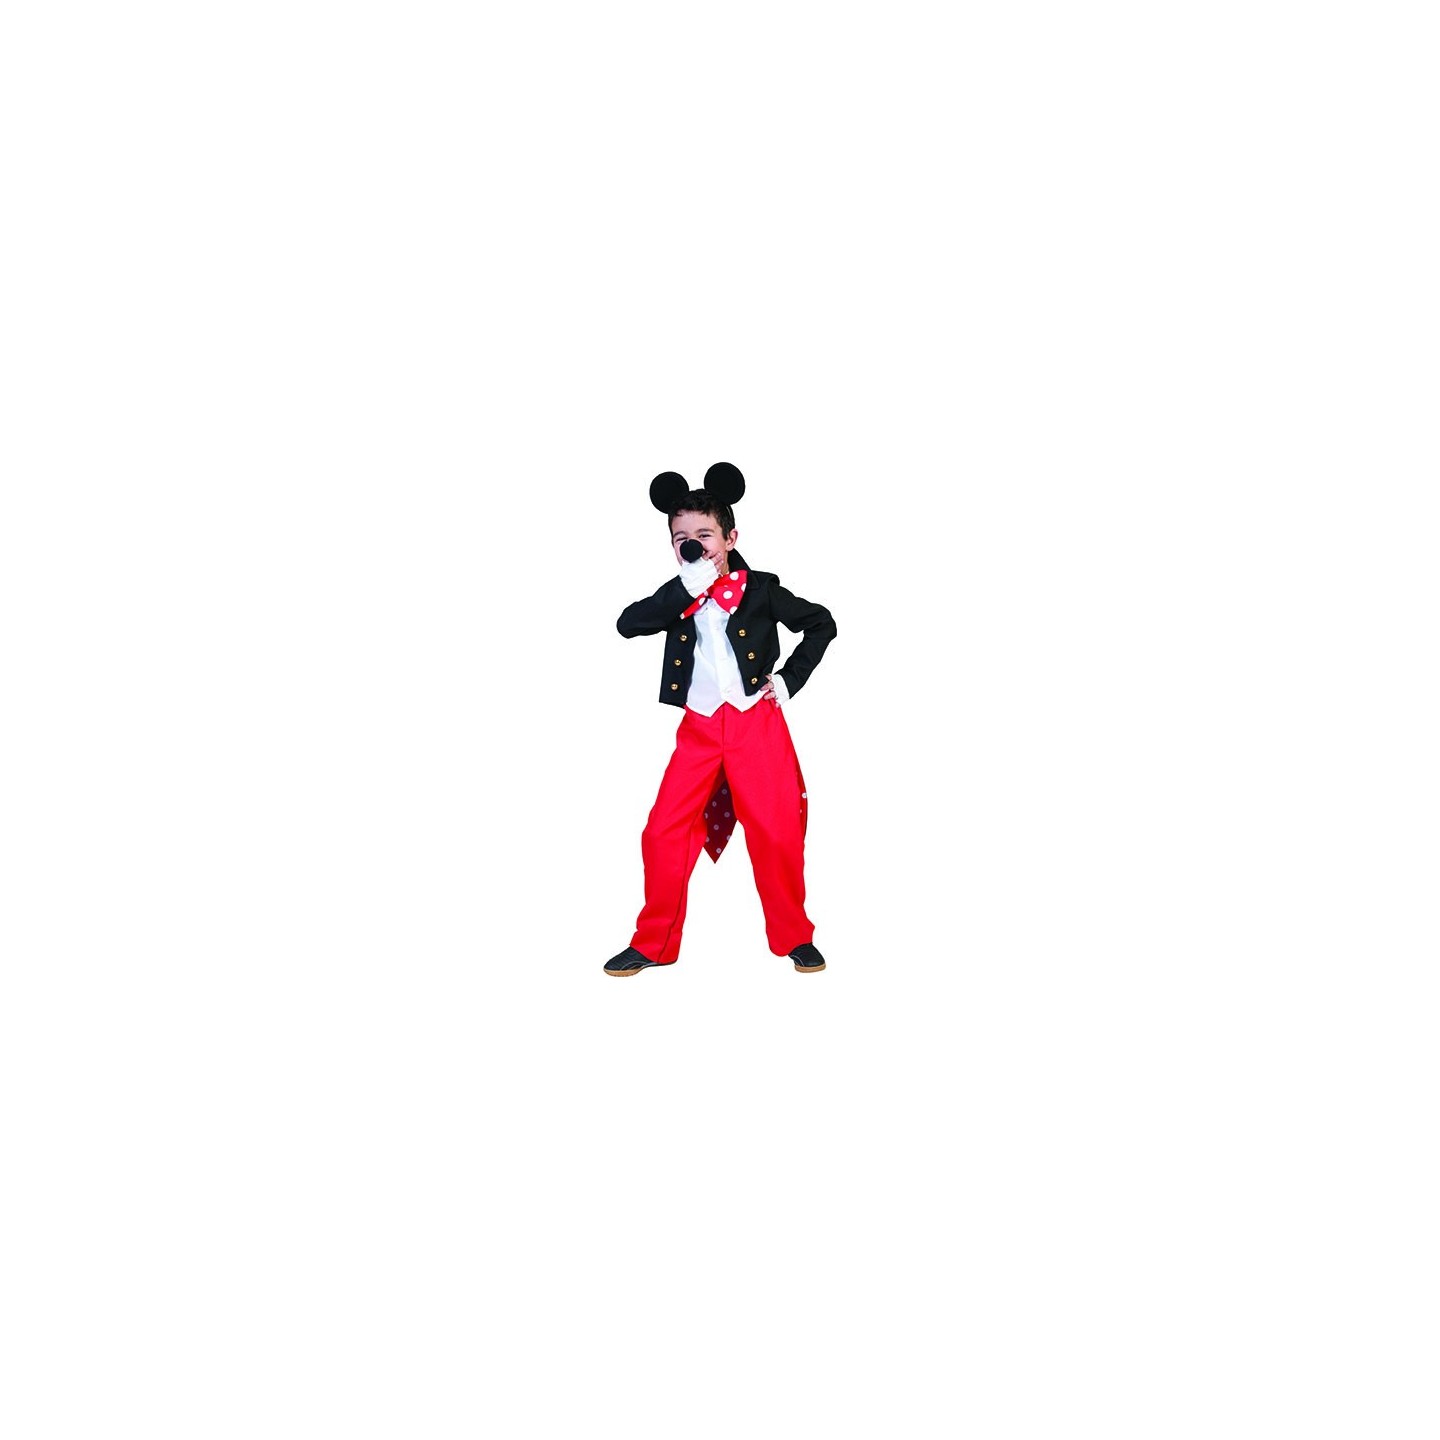 Mickey Mouse pak kostuum kind Carnavalpak